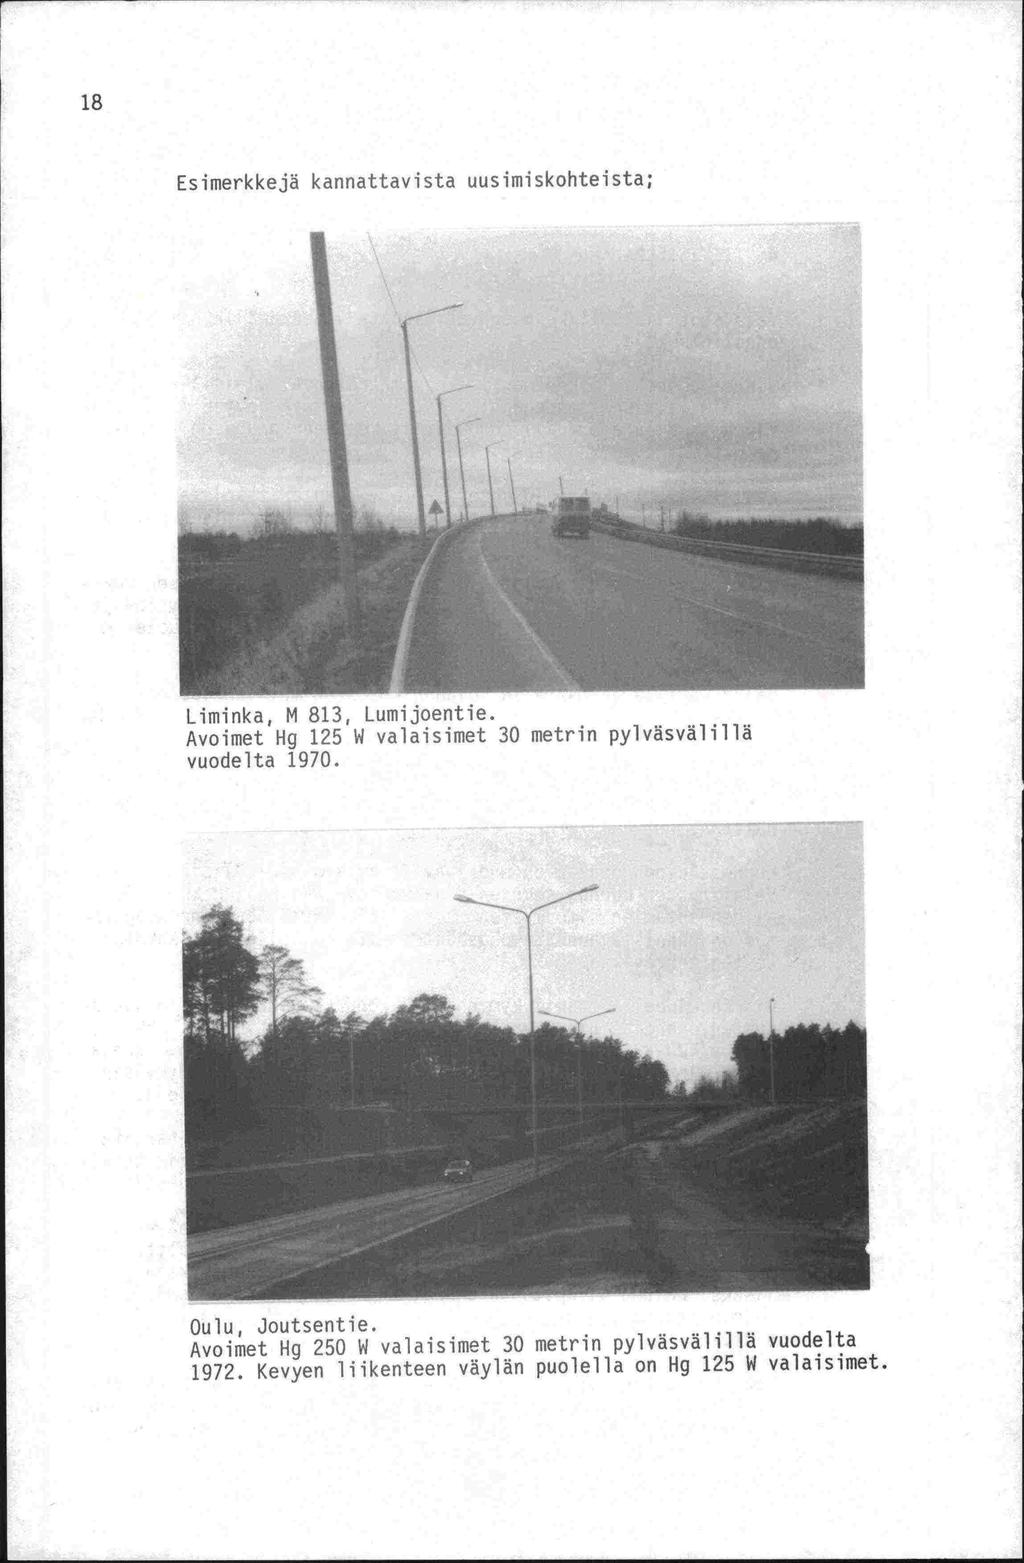 Esimerkkejä kannattavista uusimiskohteista; Liminka, M 813, Lumijoentie. Avoimet Hg 125 W valaisimet 30 metrin pylväsvälillä vuodelta 1970.